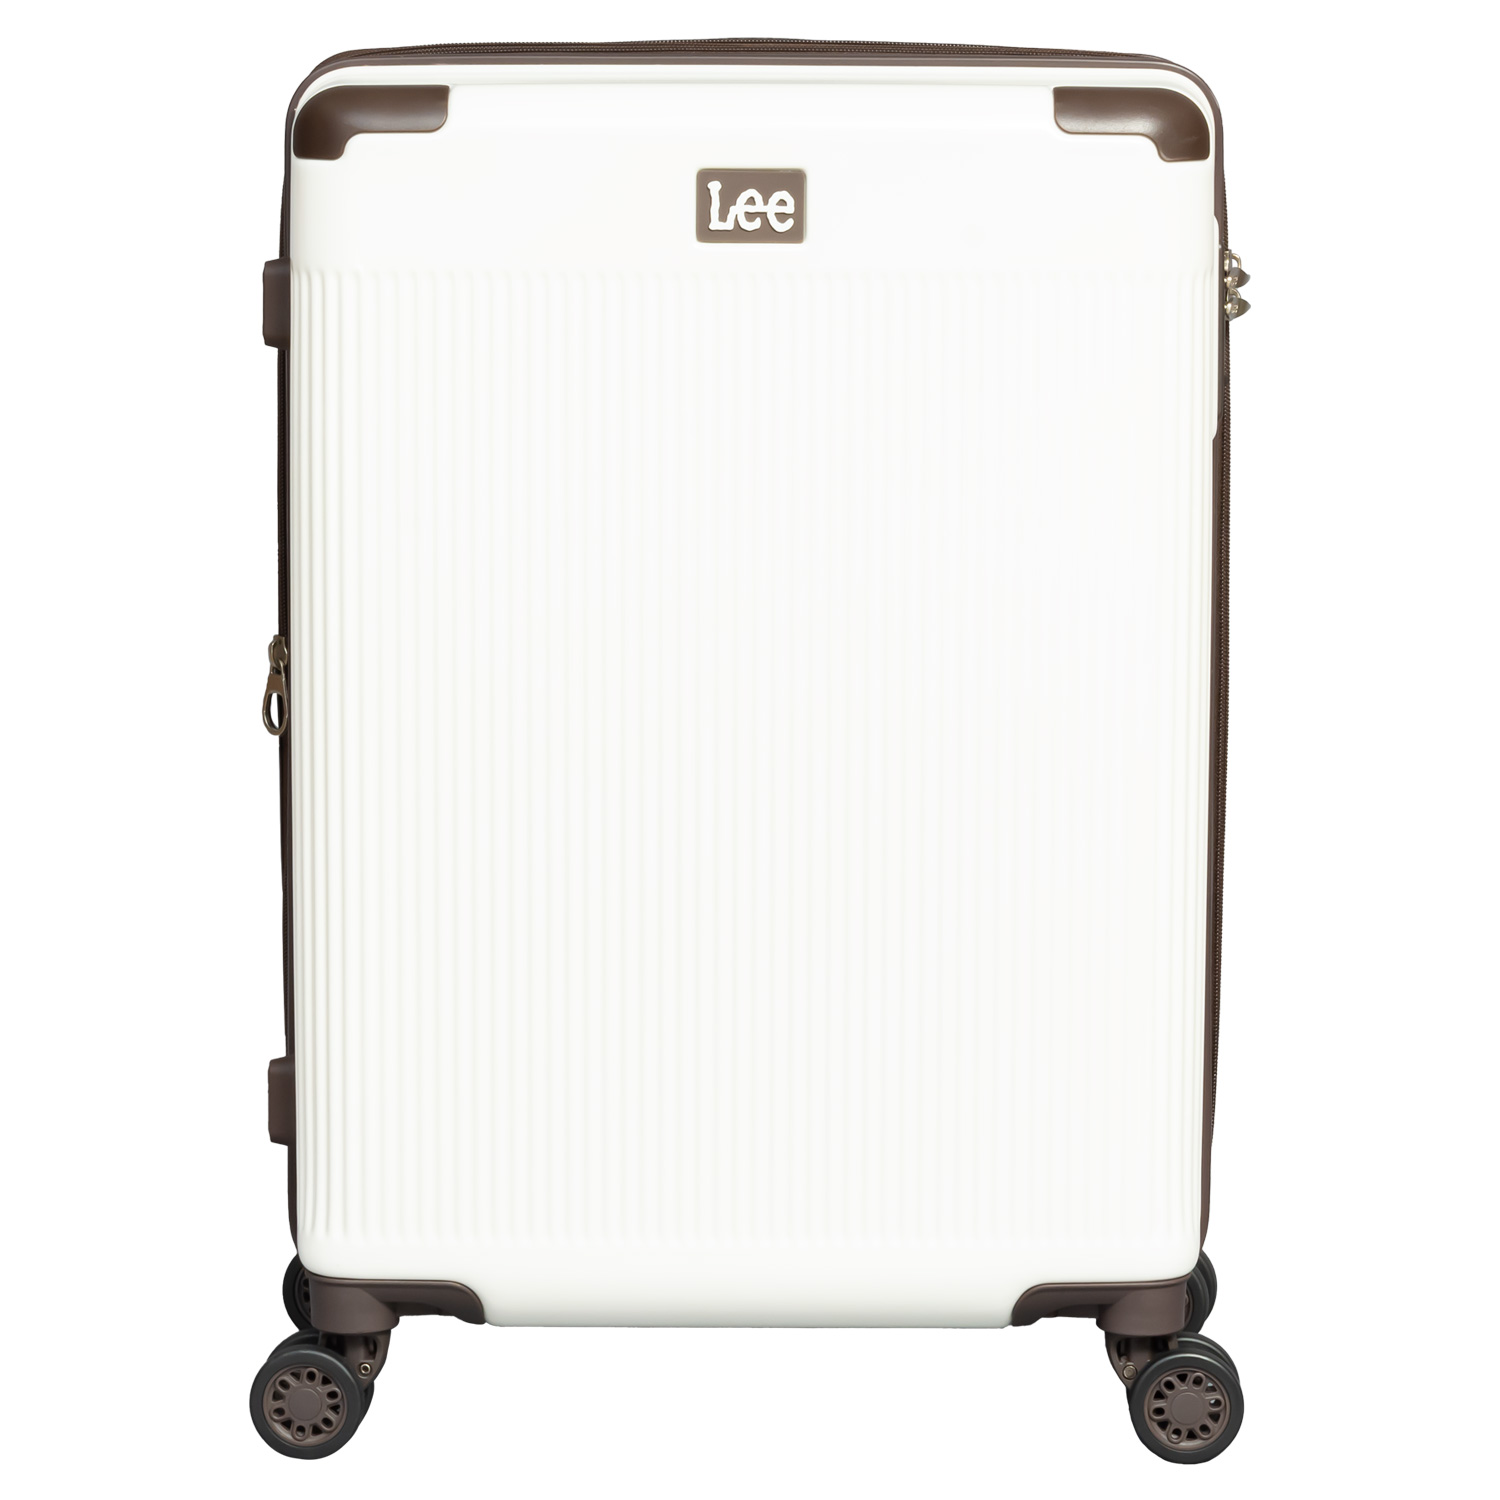 Lee スーツケース メンズ レディース 52-64L 機内持ち込み Sサイズ 拡張可能 TSAロッ...